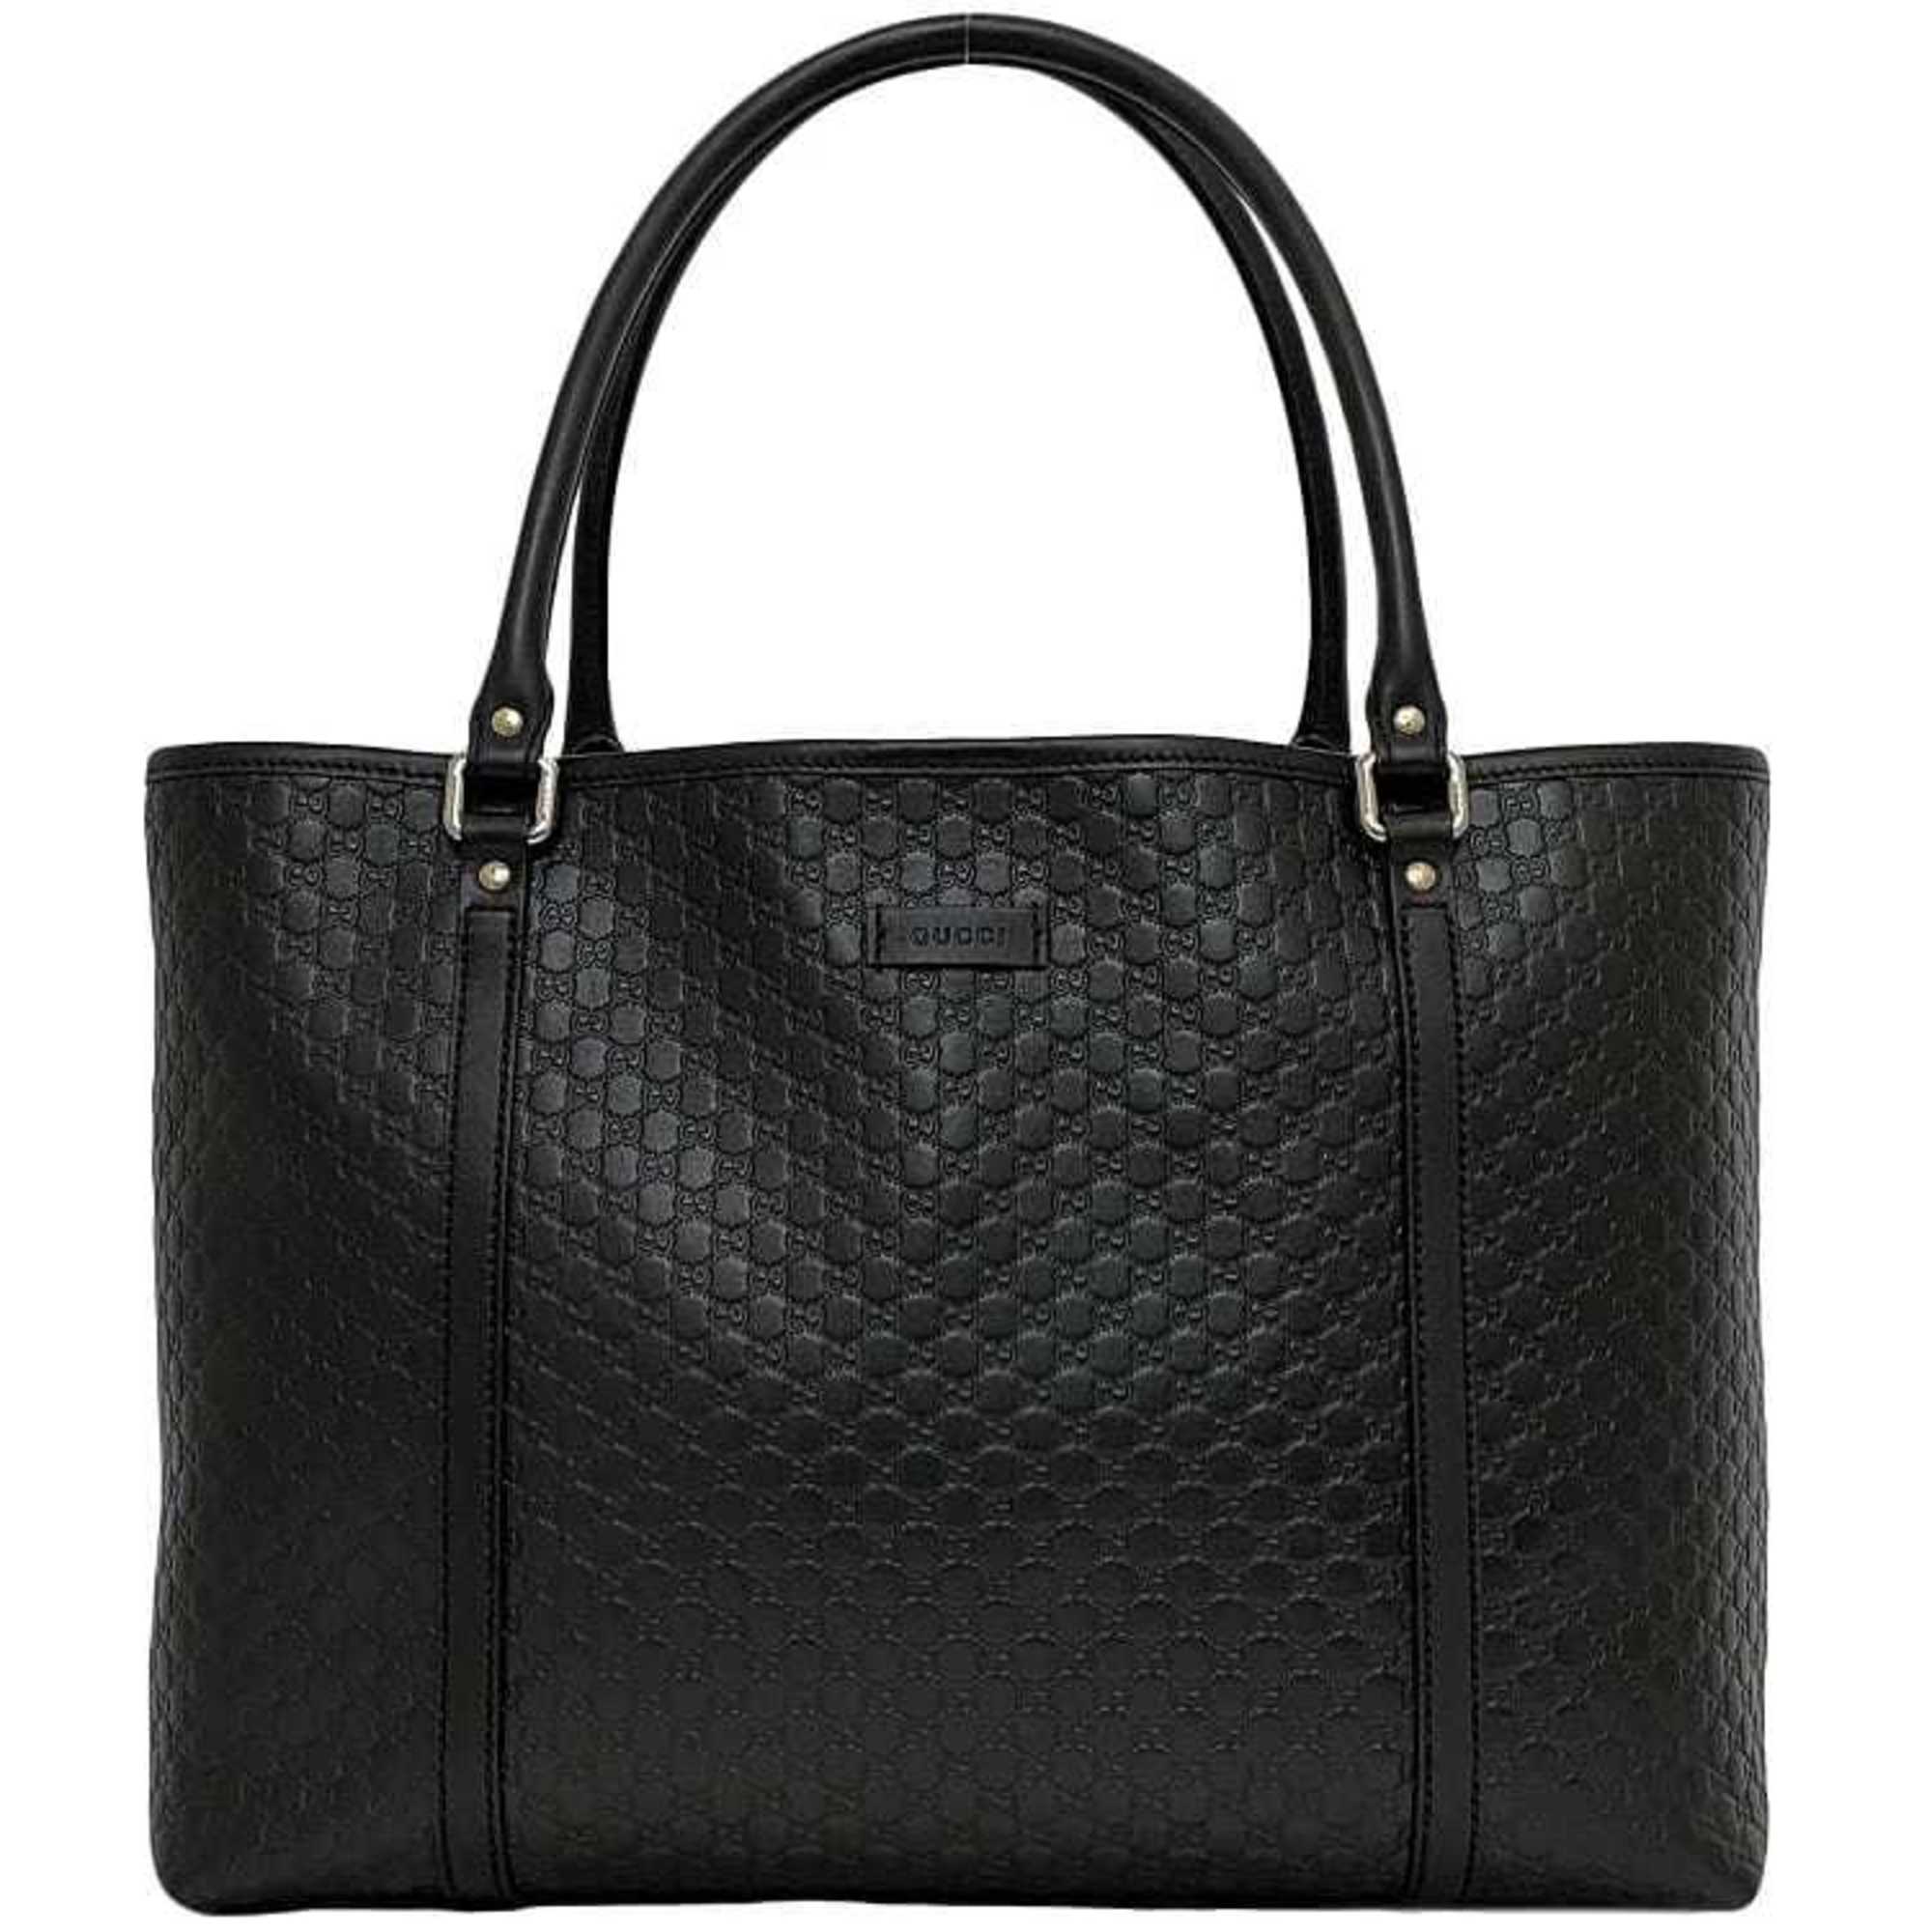 Gucci Tote Bag Black Micro Shima 449647 f-20512 GG Leather GUCCI Freestanding A4 Women's Handbag